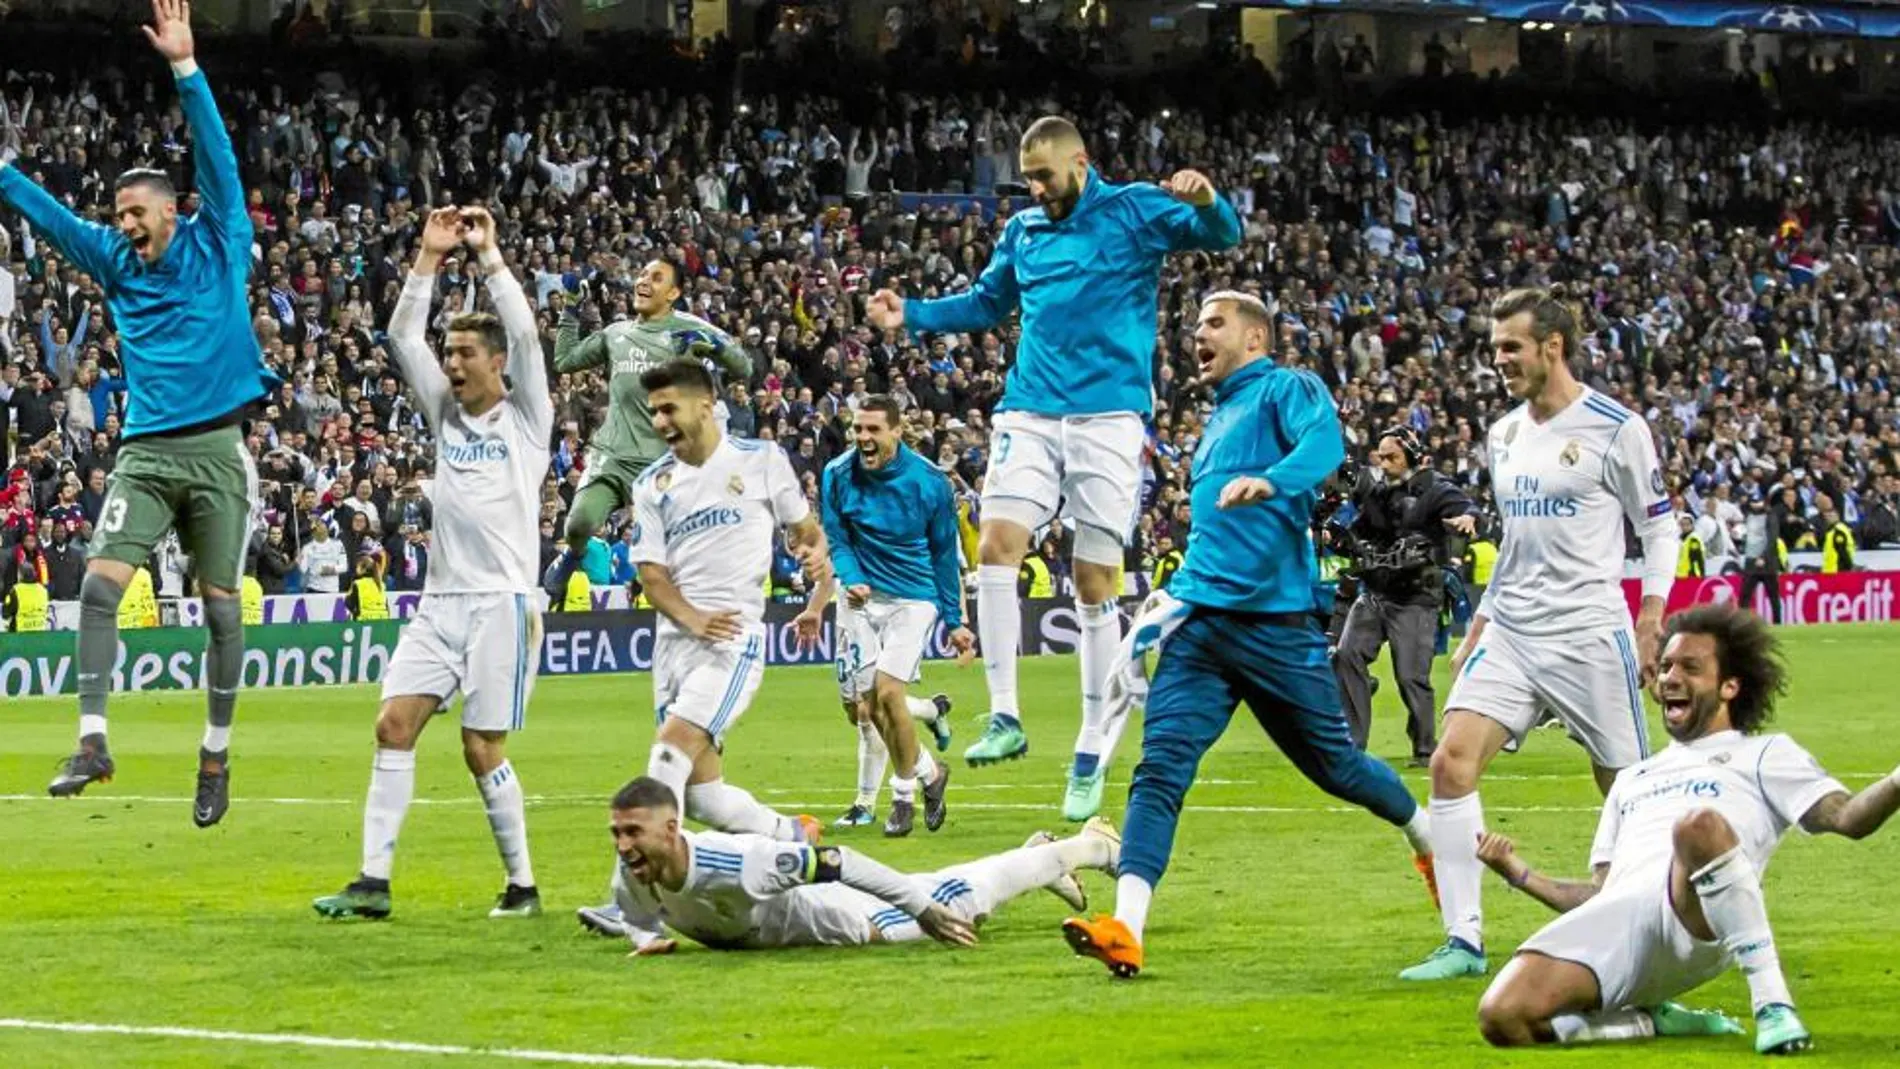 Cara a cara: ¿Ganará el Madrid la final de Kiev?